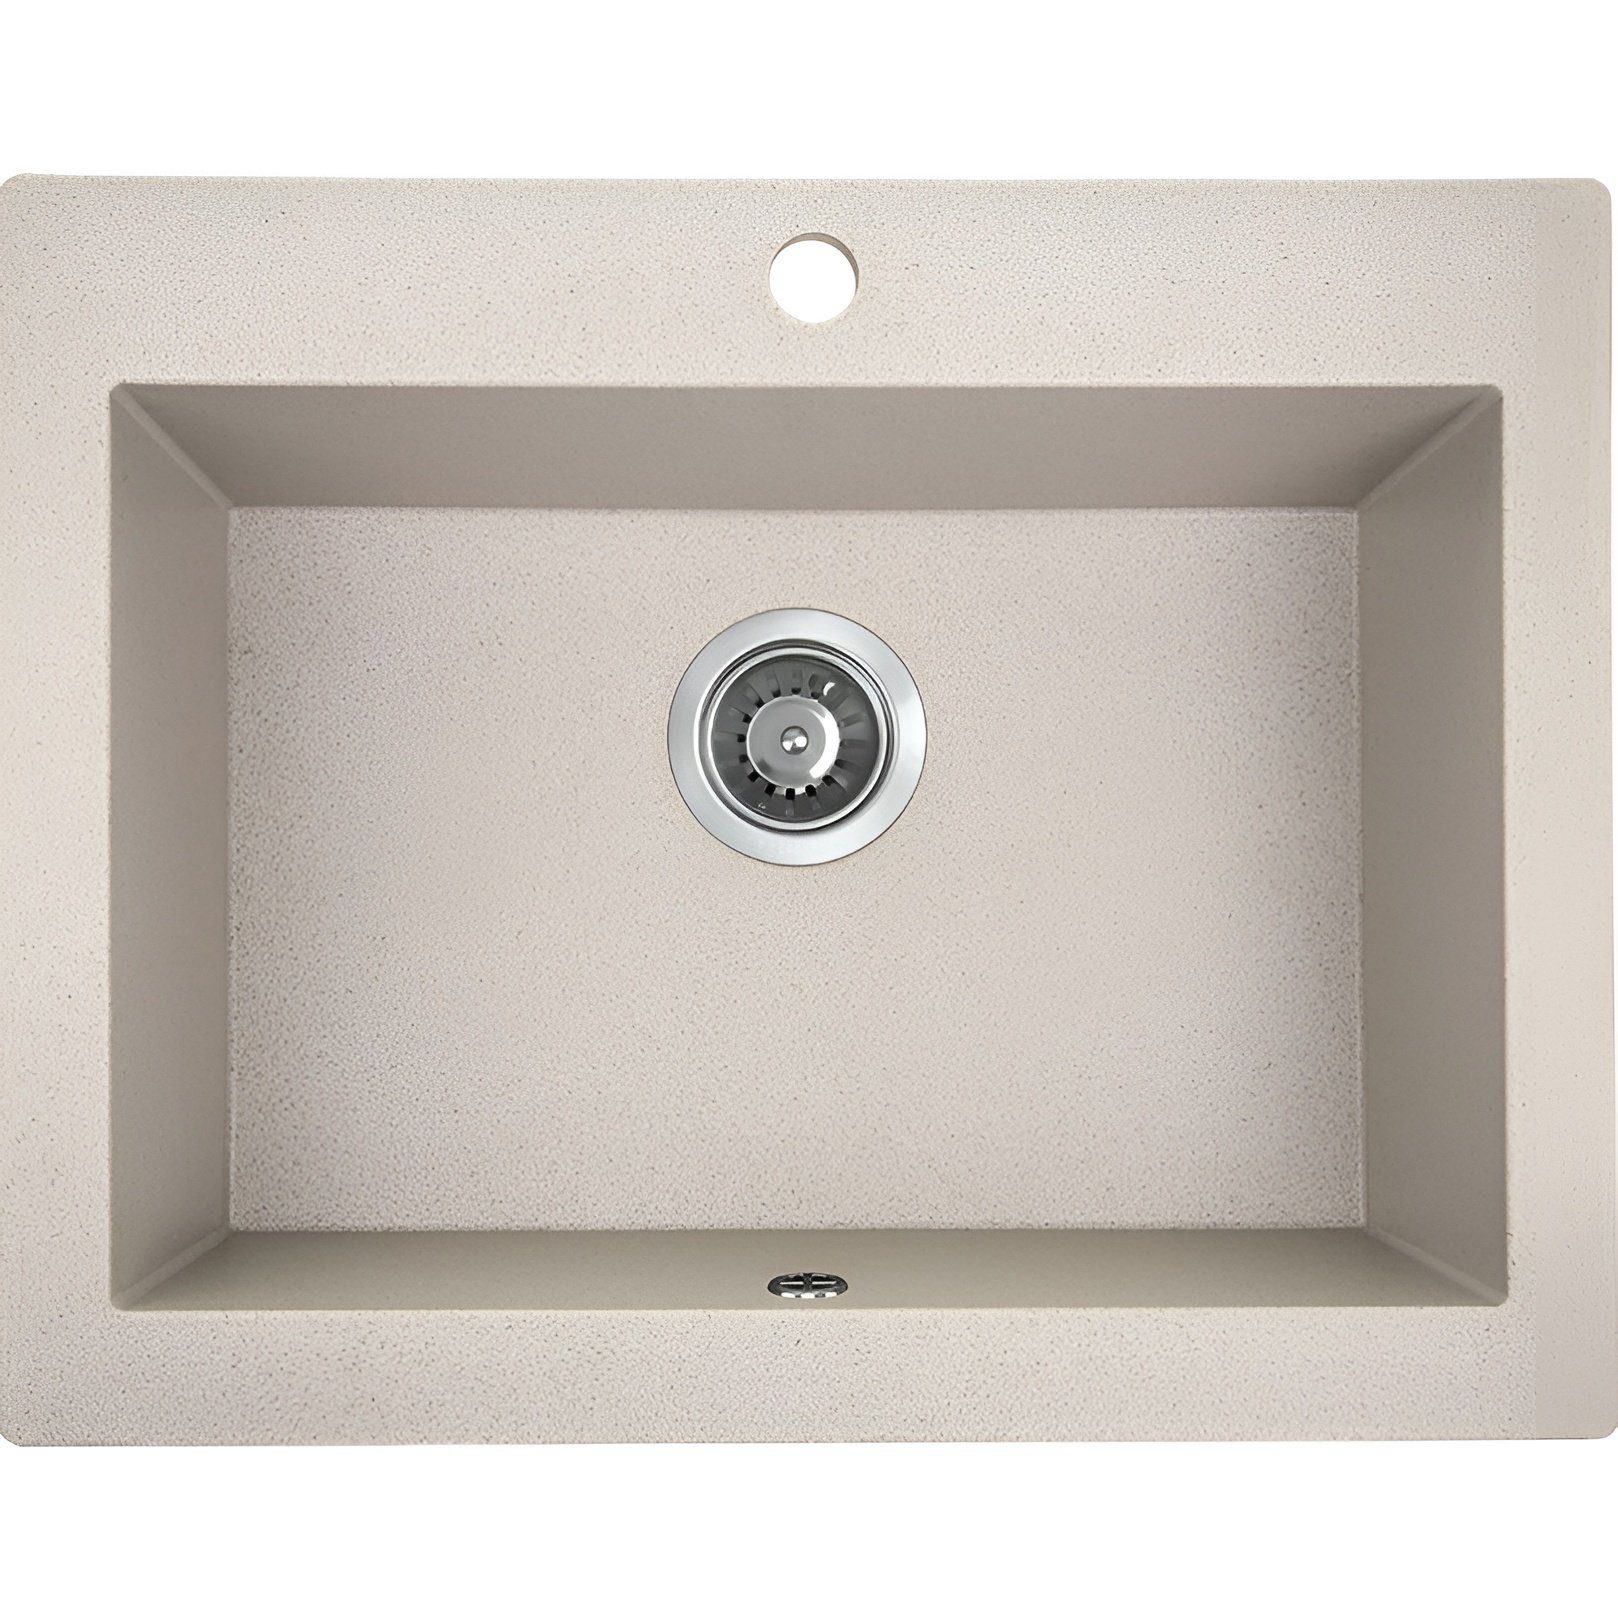 KOLMAN Küchenspüle Einzelbecken Komodo Granitspüle, Rechteckig, 49/58 cm, Beige, Space Saving Siphon GRATIS